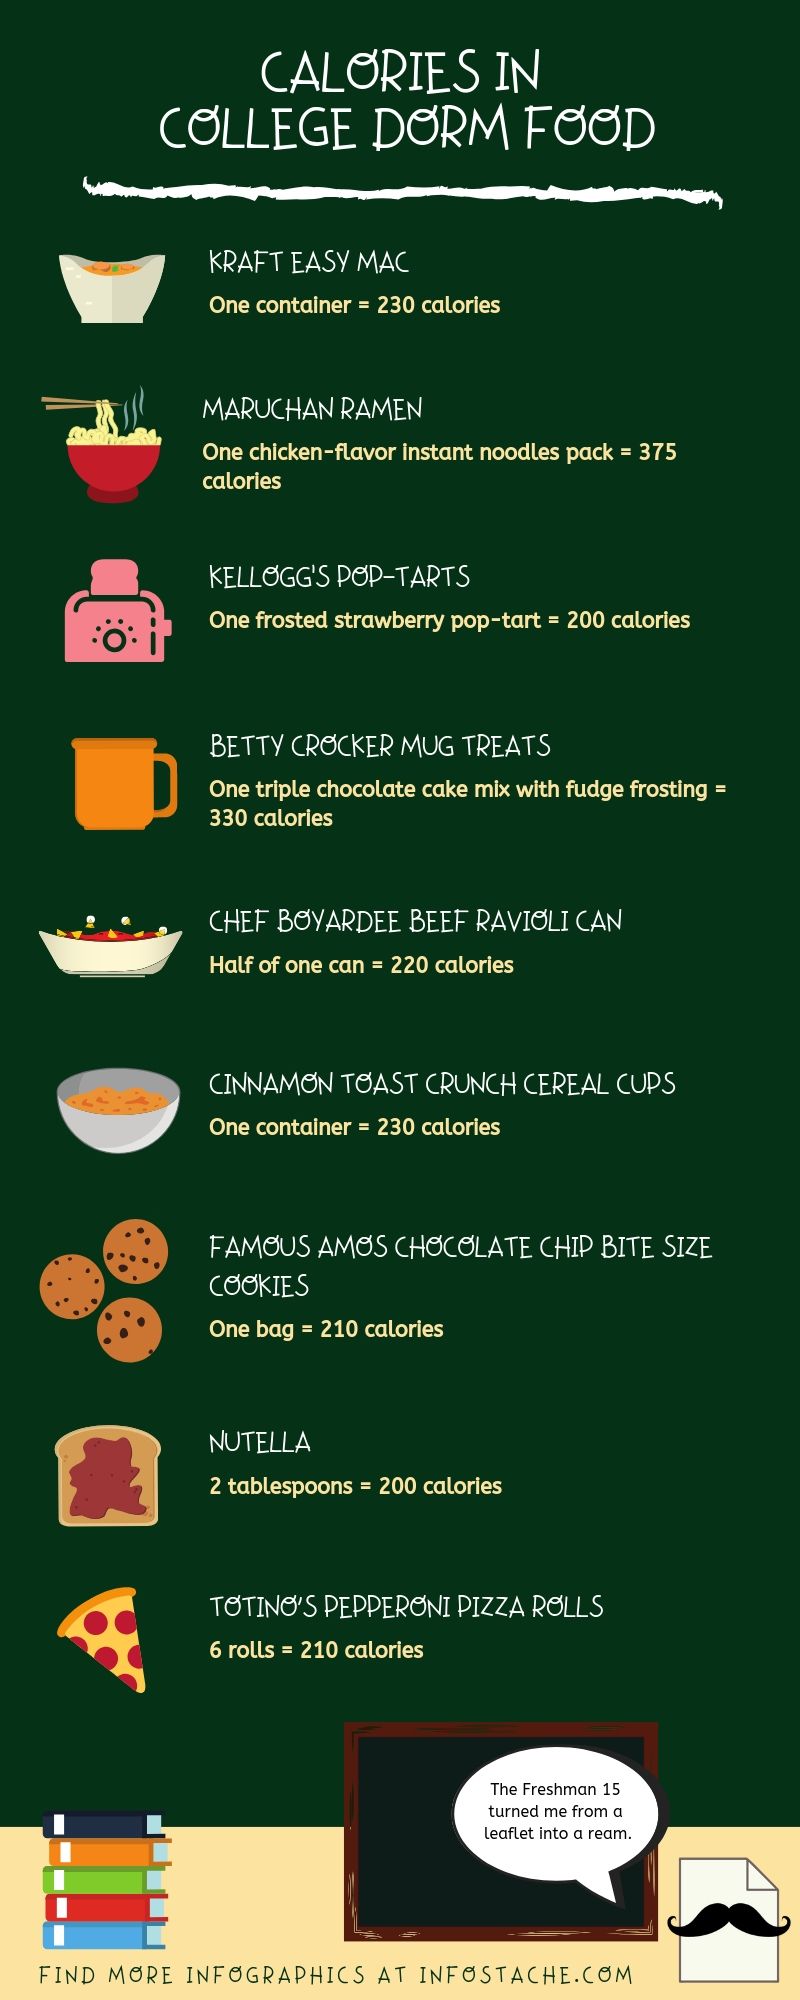 Calories in College Dorm Food